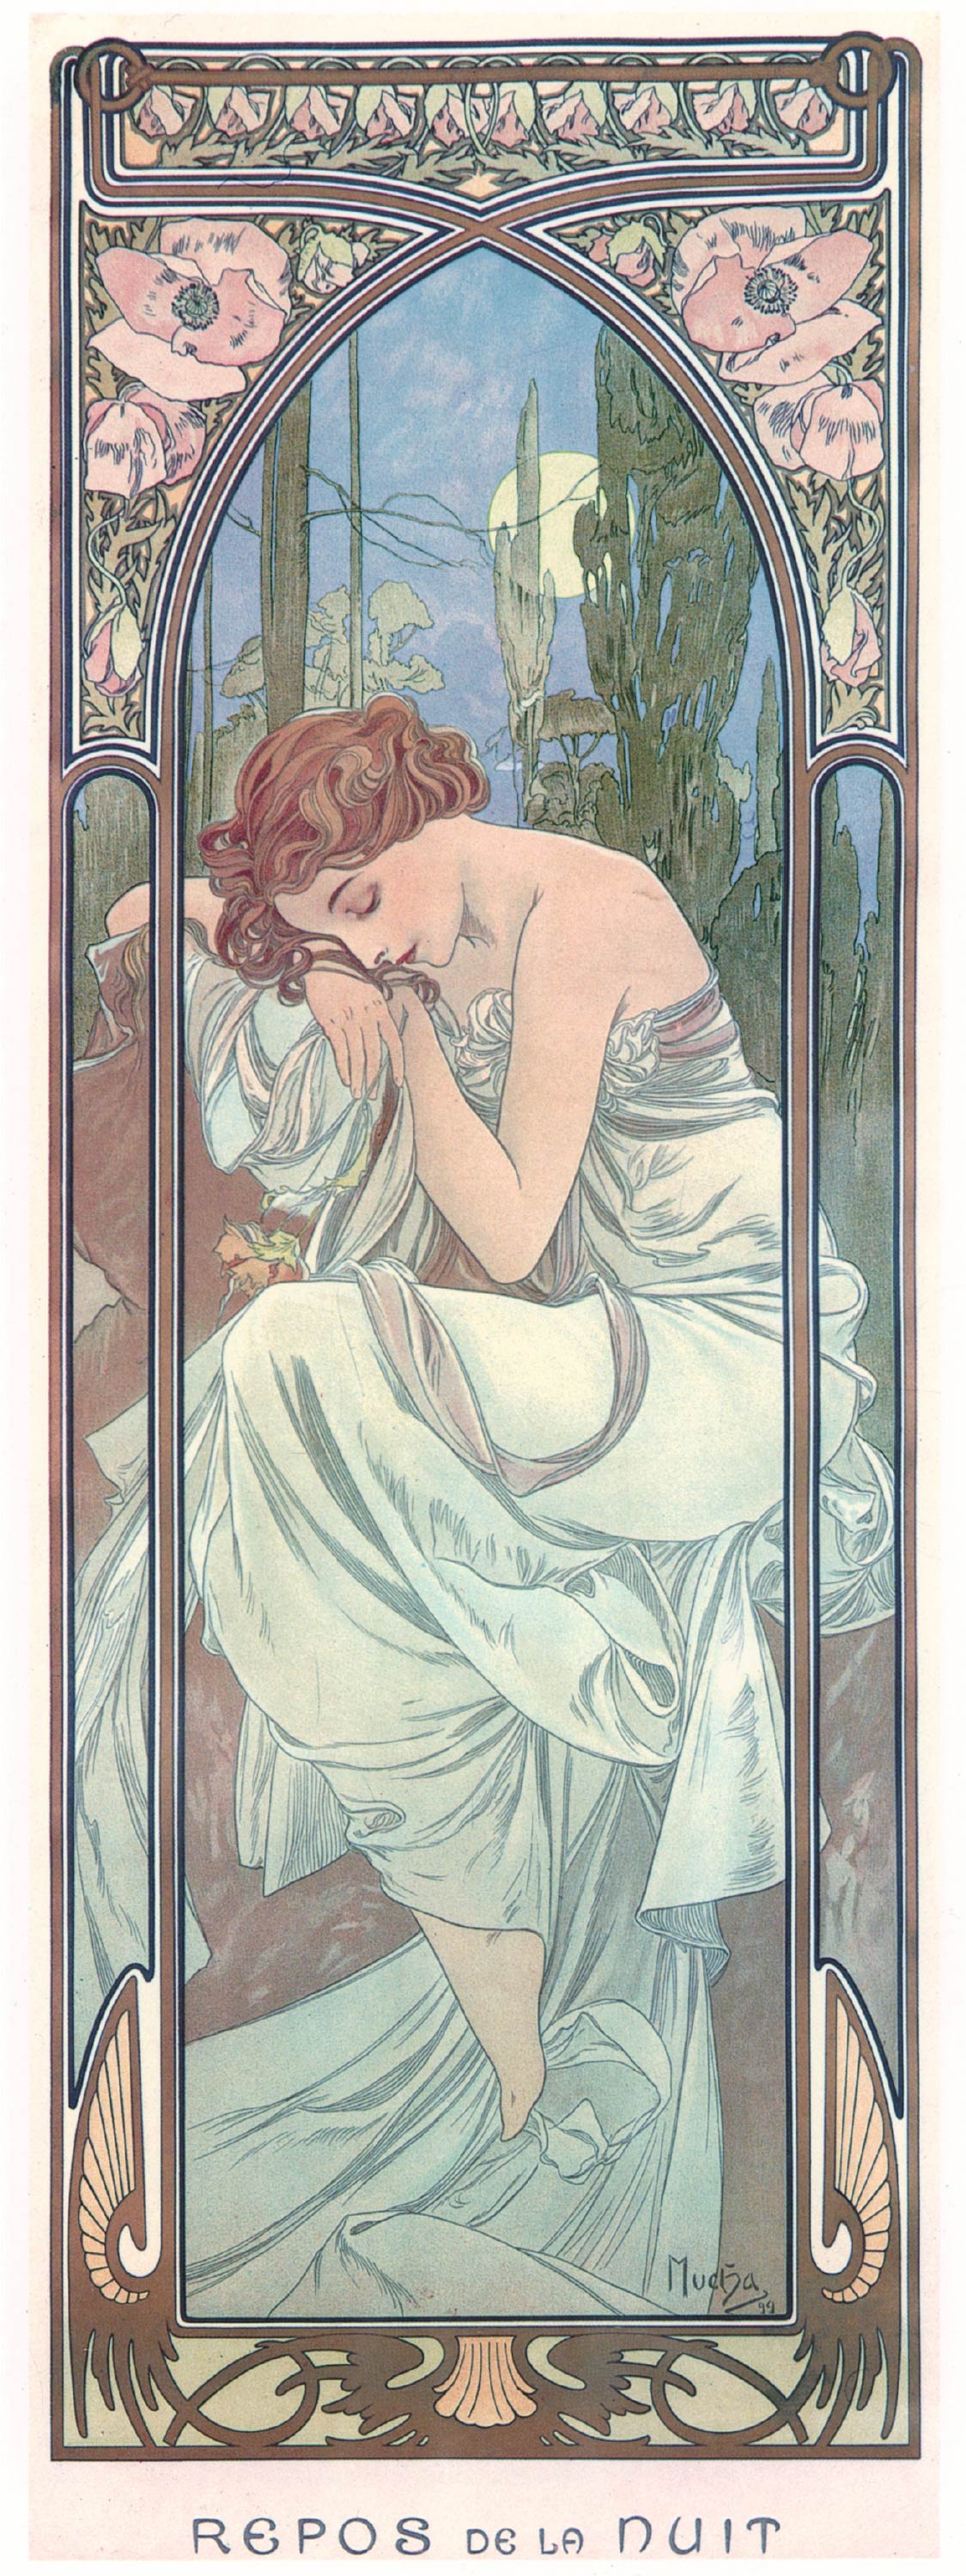 【無料壁紙】アルフォンス・ミュシャ「四つの時の流れ-夜の安らぎ (1899)」 / Alphonse Mucha_The Times of the Day-Night’s Rest  (1899)